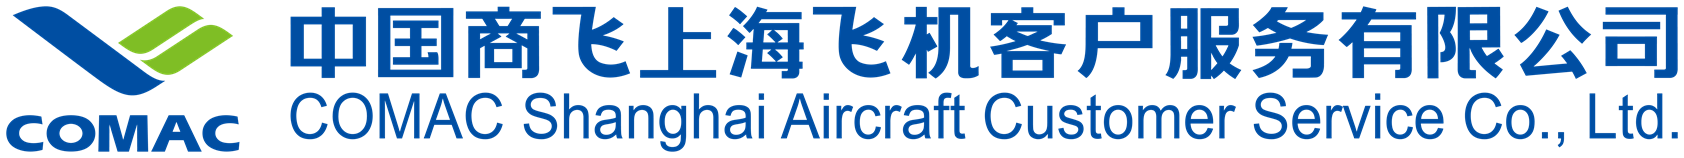 中国商飞上海飞机客户服务有限公司-04.png